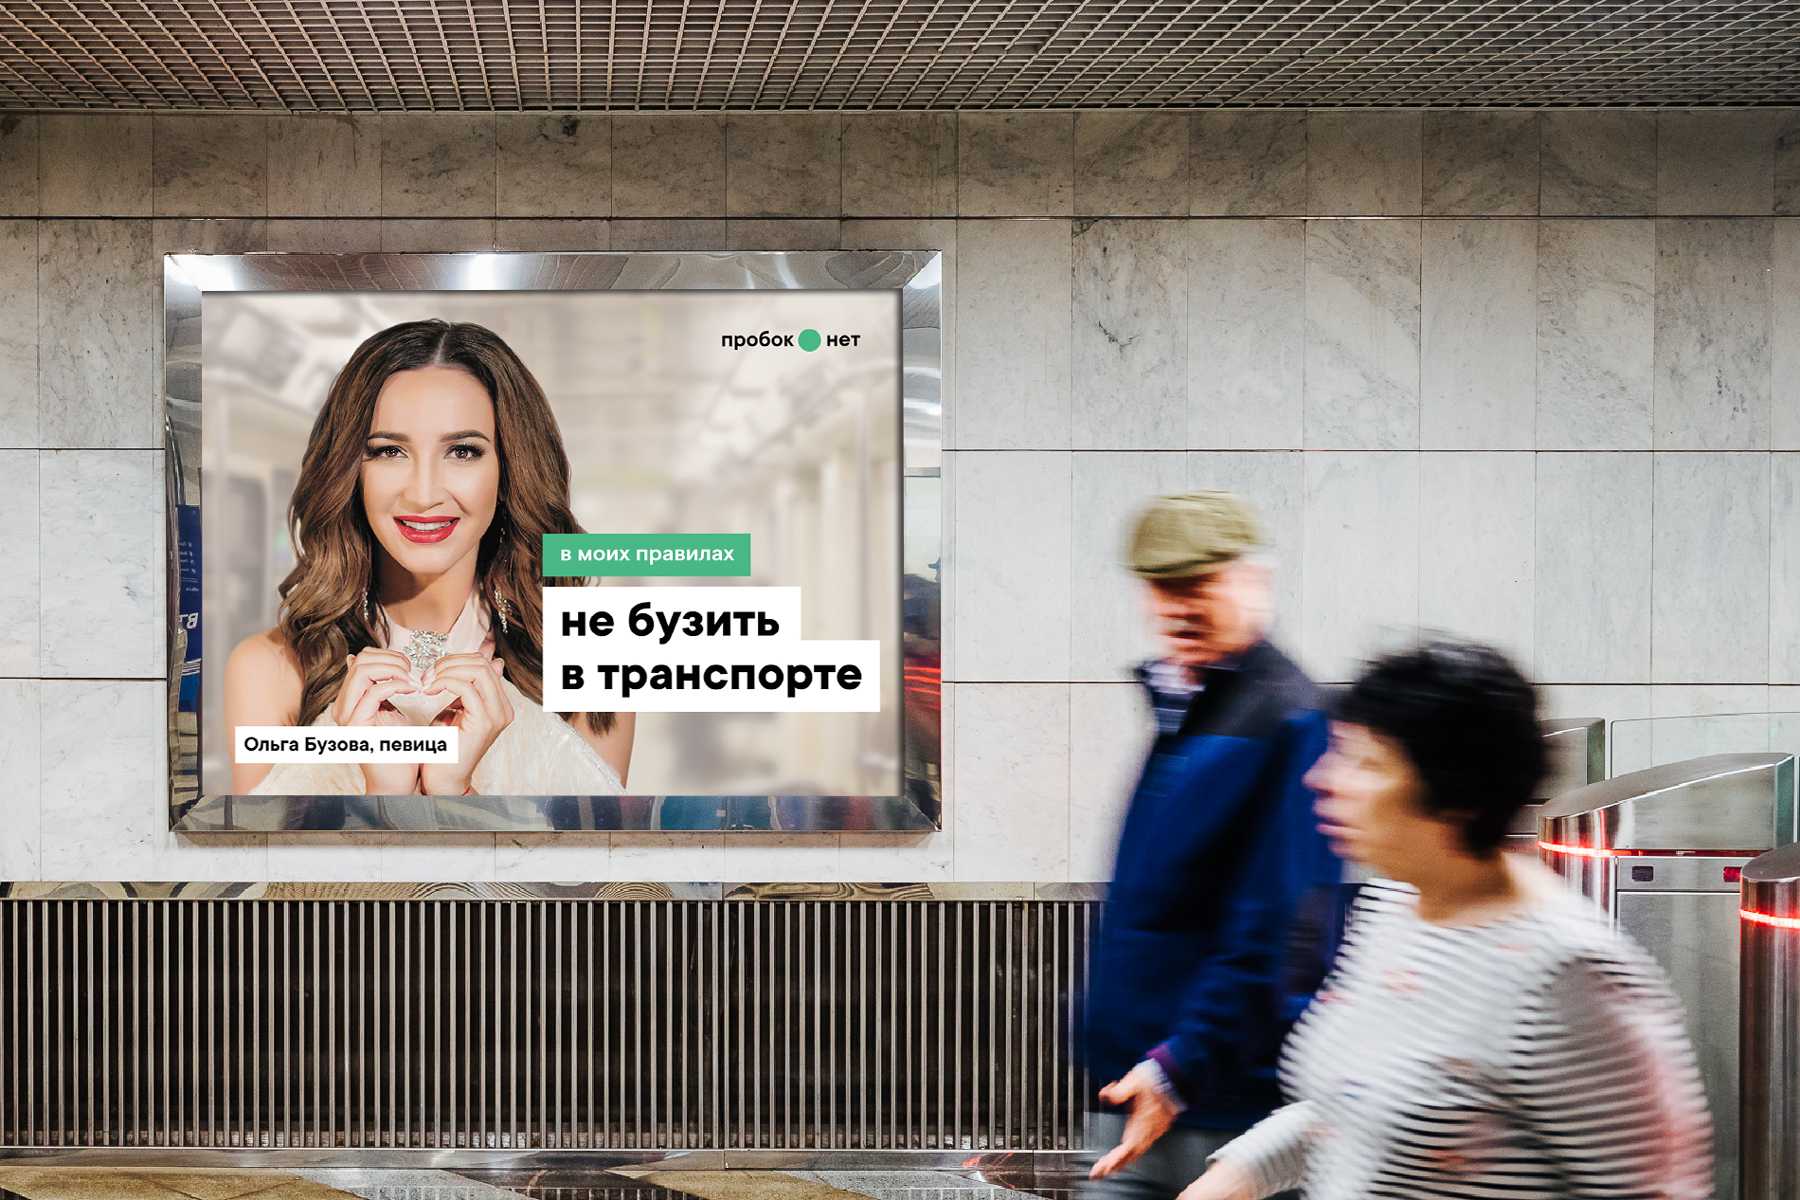 Здесь будет метро. Социальная реклама в метро. Рекламные баннеры в метро. Реклама метрополитена. Социальная реклама в метро Москвы.